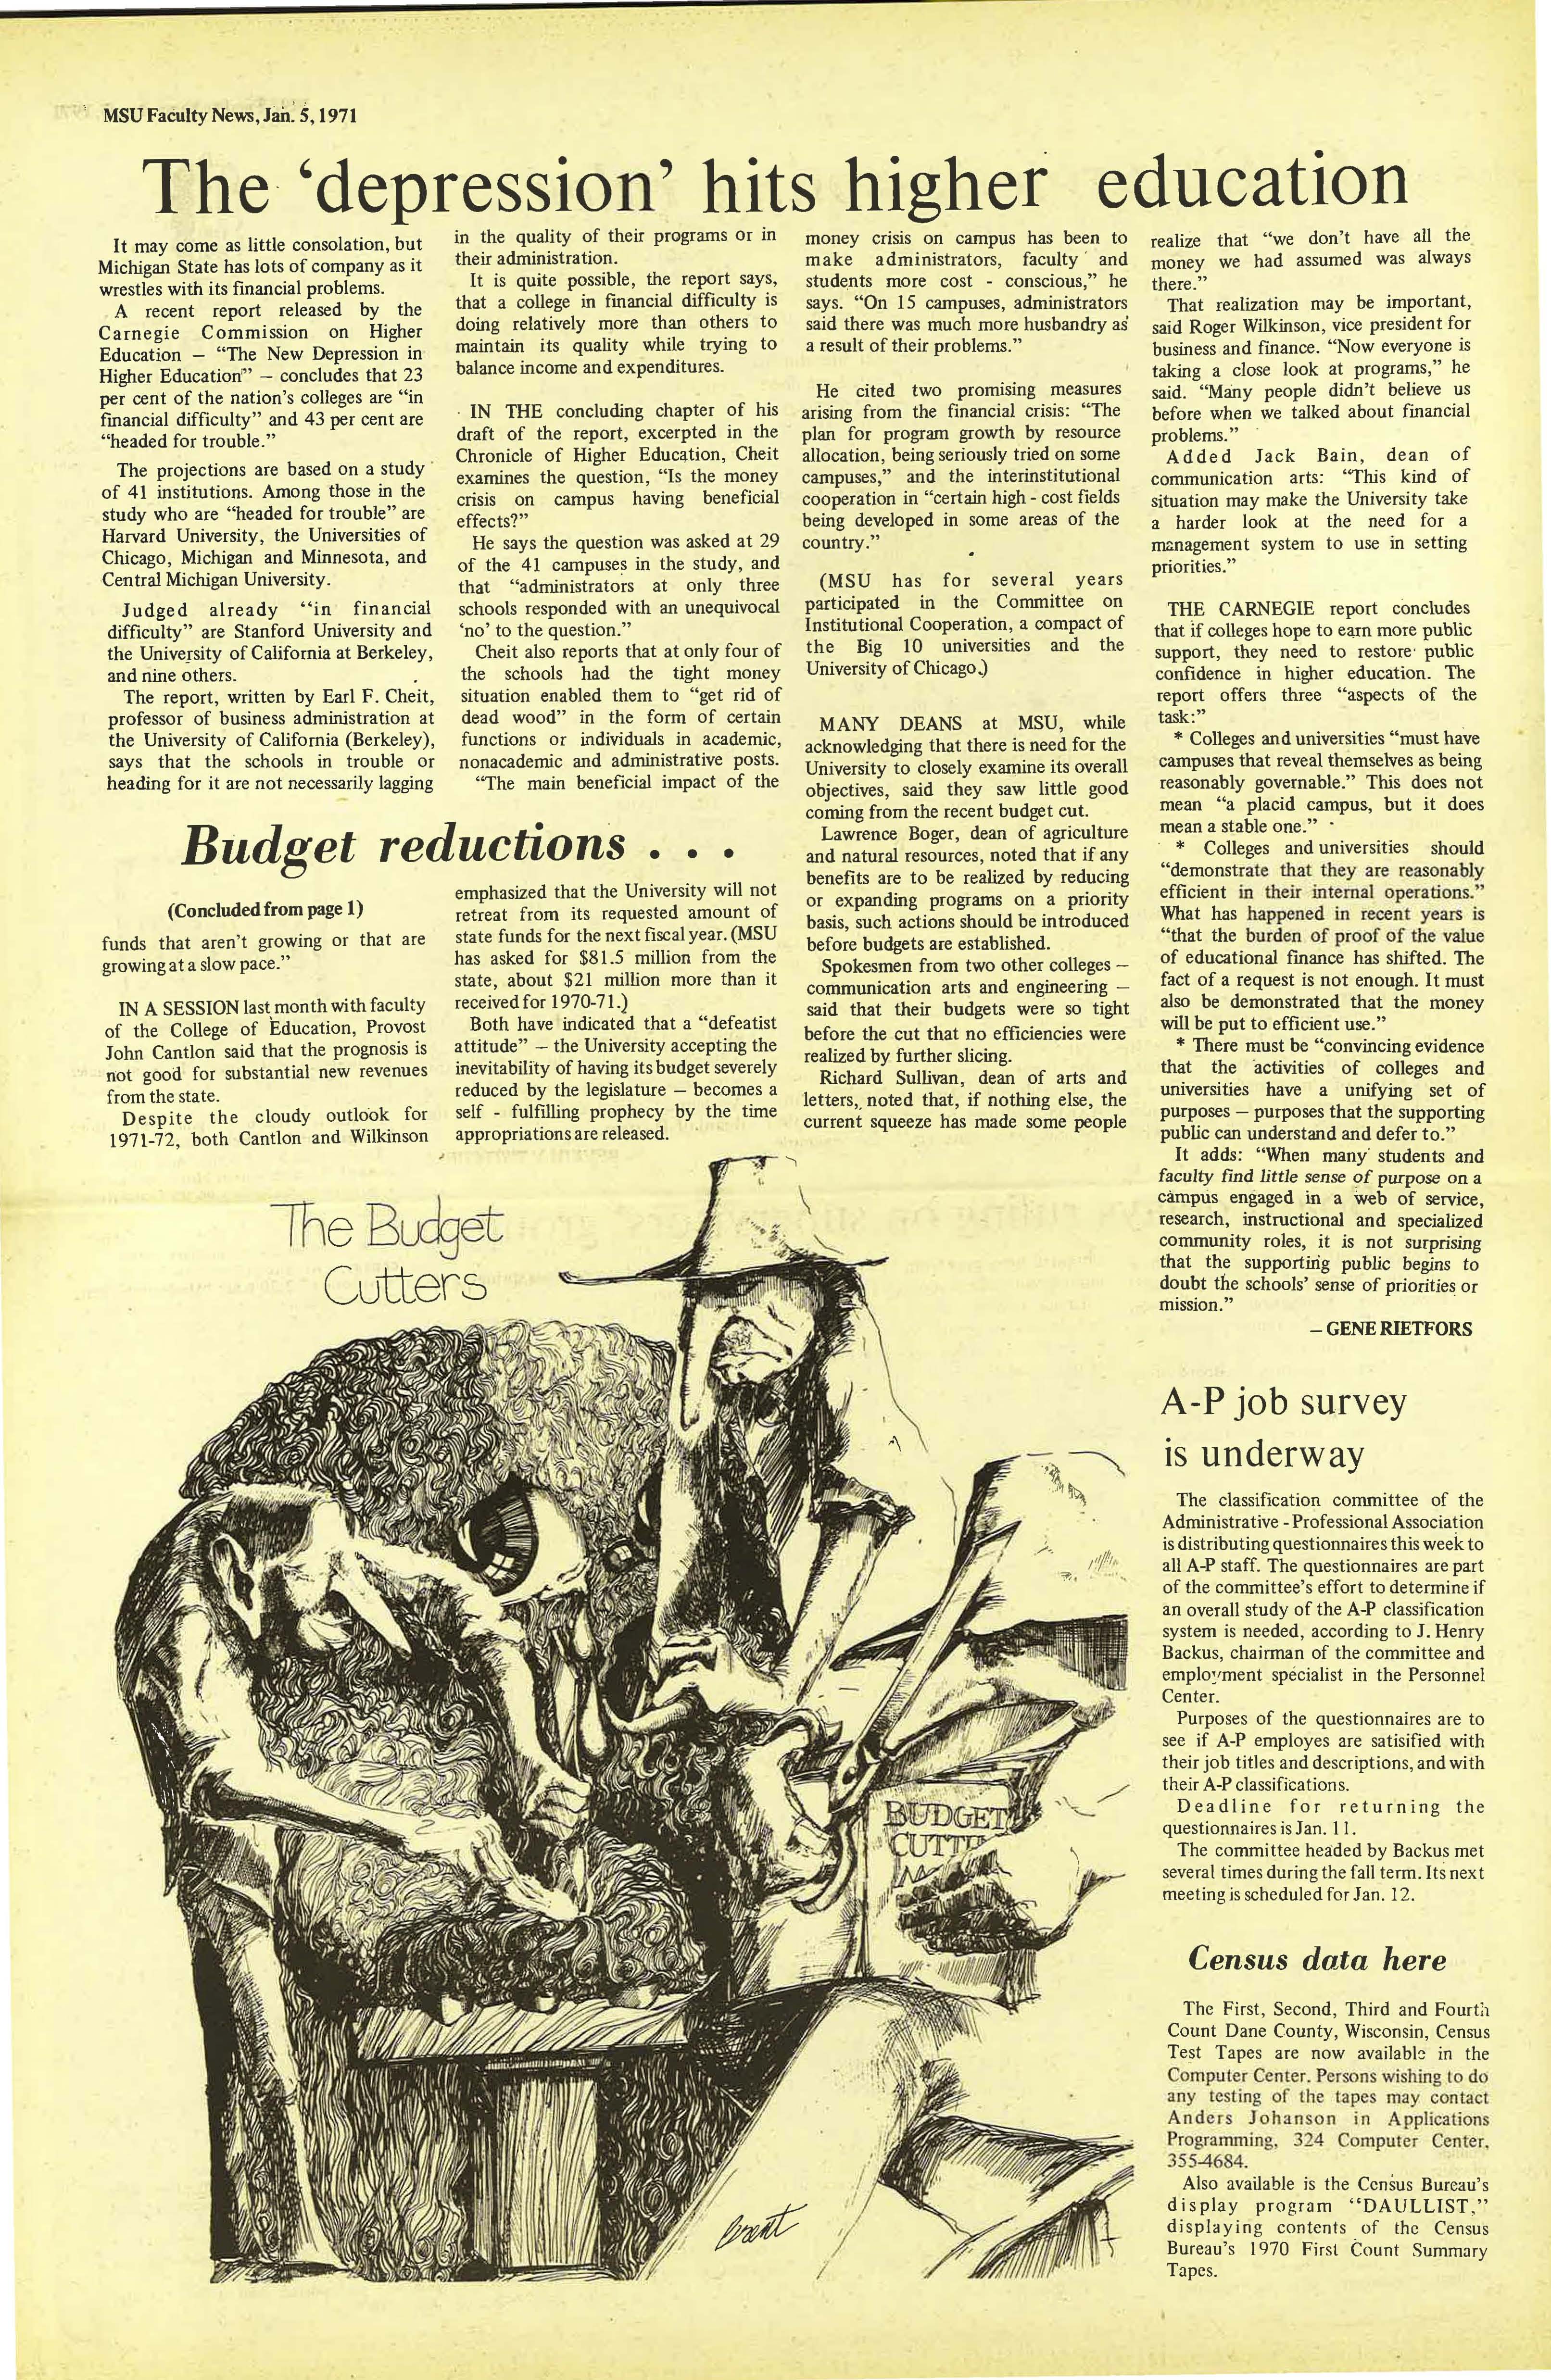 MSU News Bulletin, vol. 2, No. 29, May 27, 1971